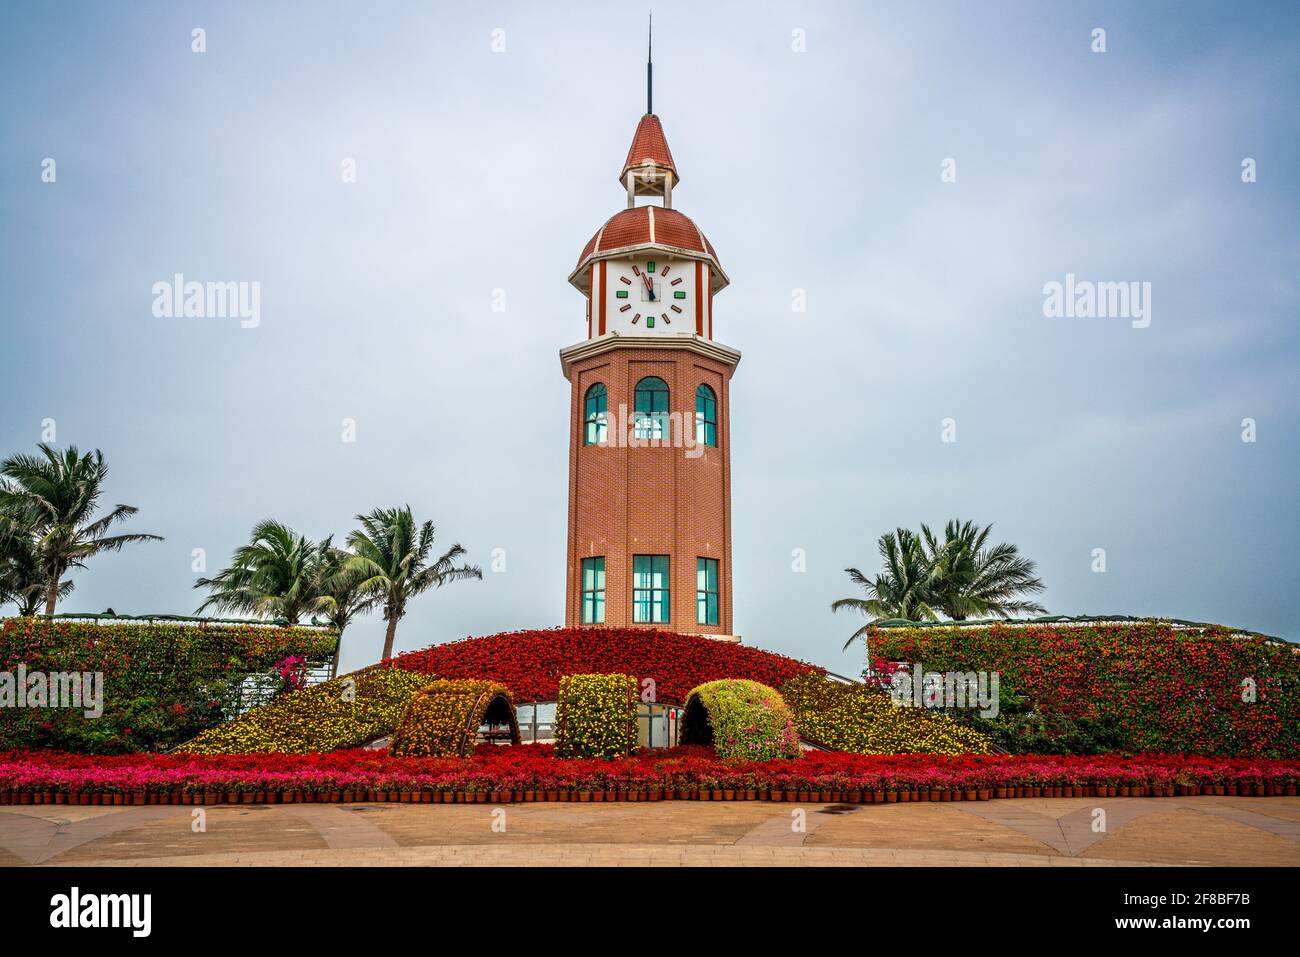 Vue de face de la tour de l'horloge de Guanhaitai à Haikou Hainan Chine Banque D'Images